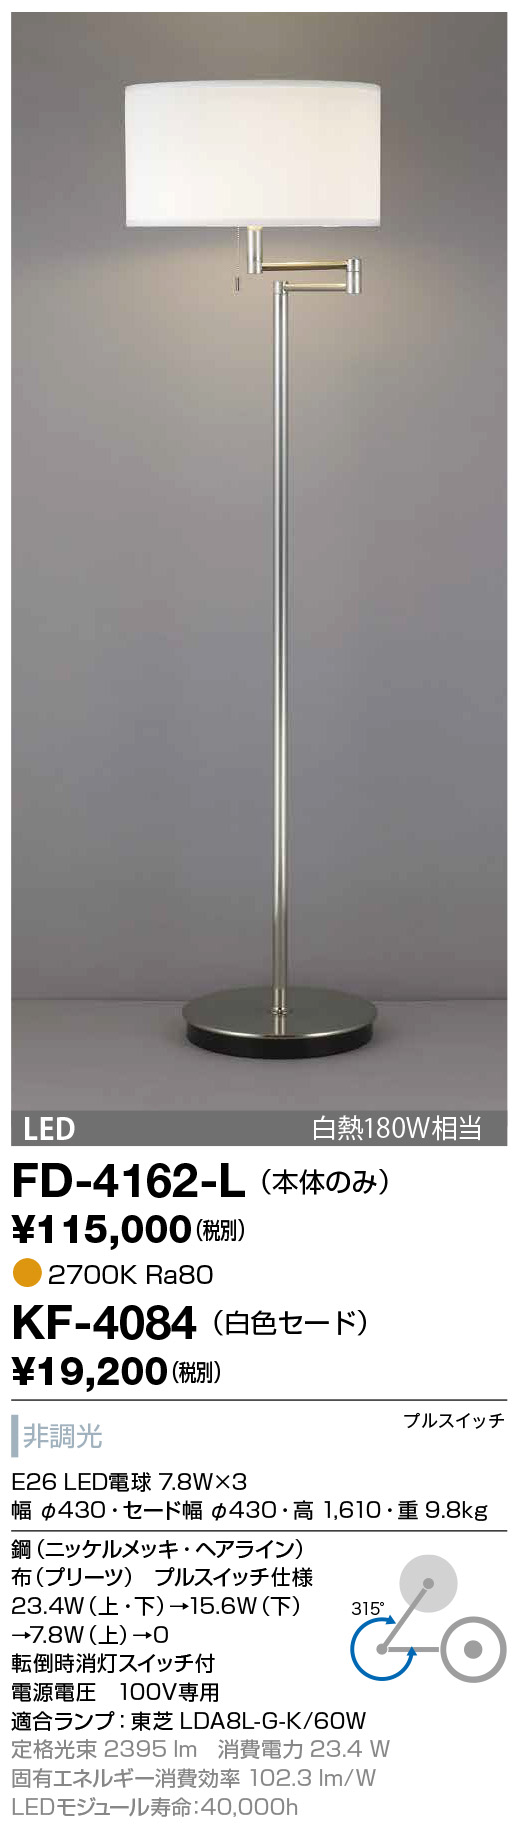 FD-4162-L | 照明器具 | ○☆【限定特価】 LEDランプ交換型 スタンド 